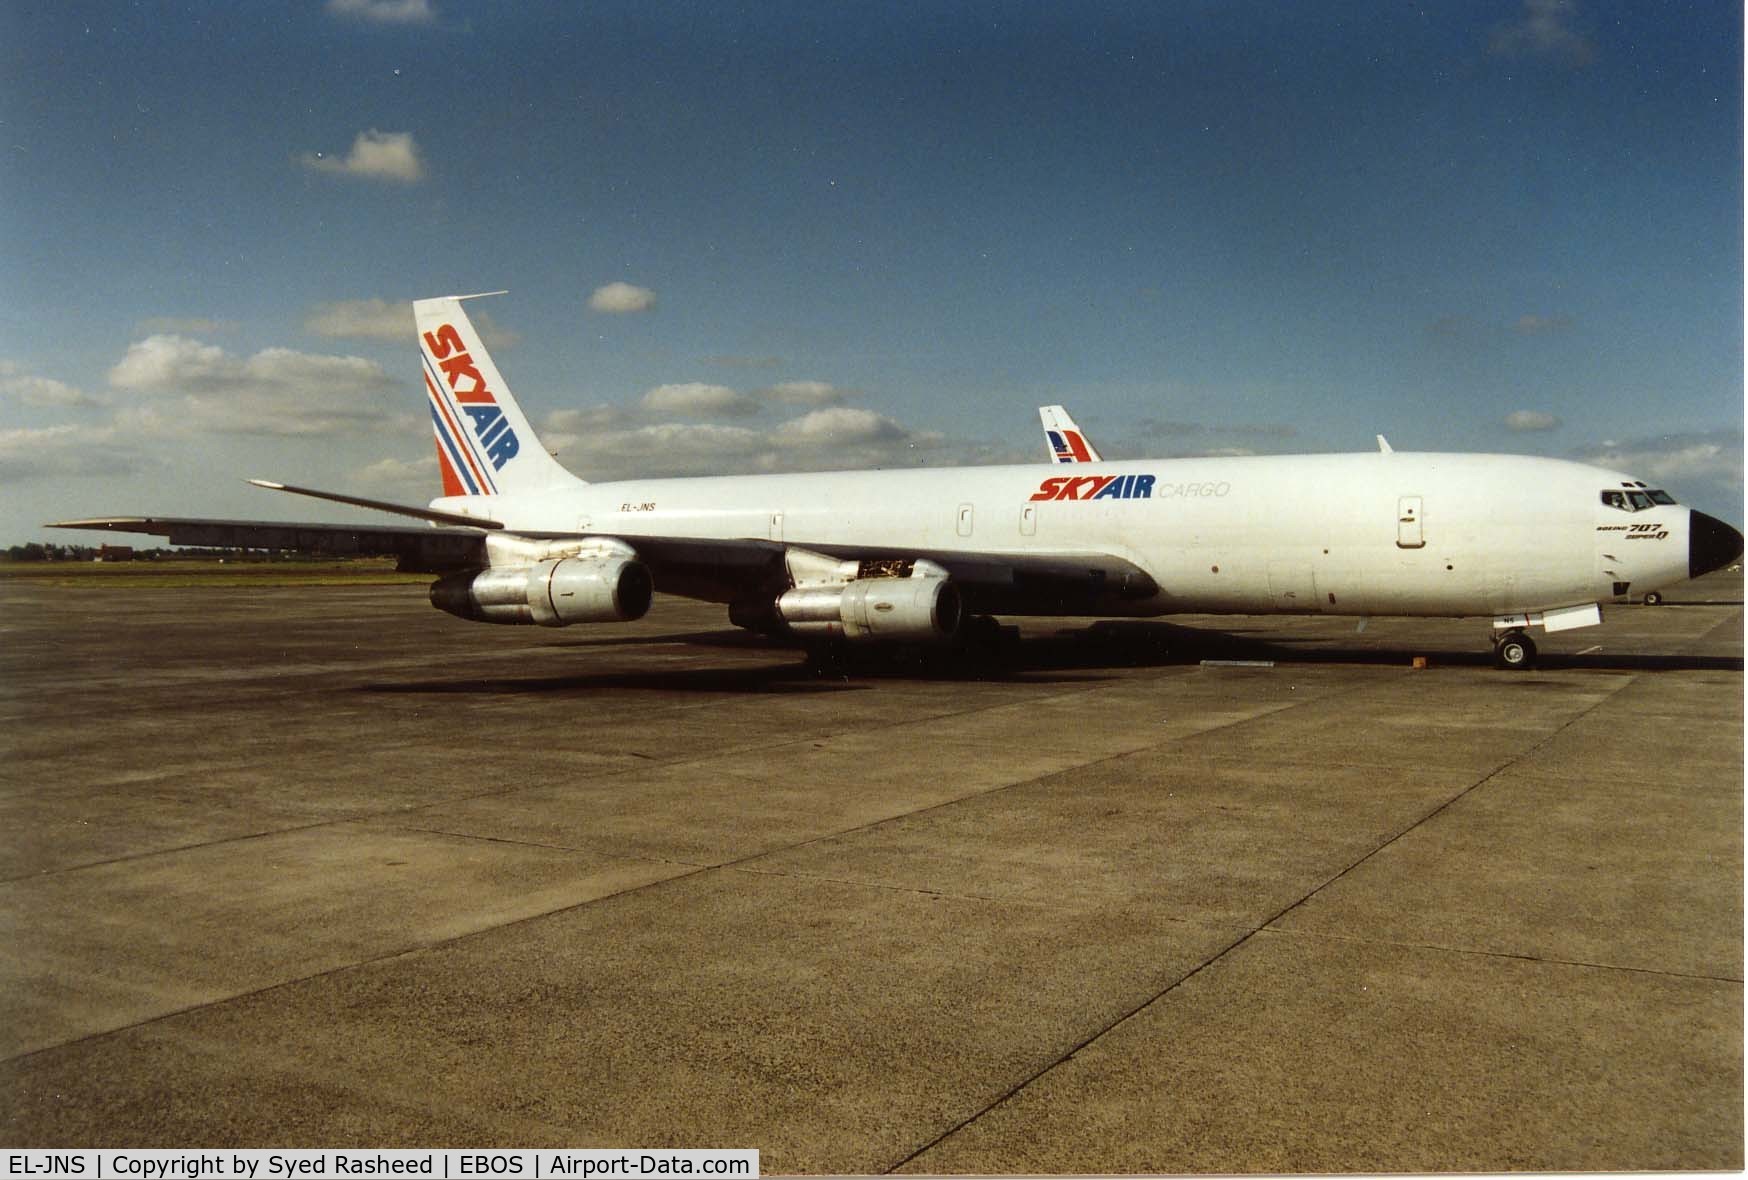 EL-JNS, 1963 Boeing 707-323C C/N 18689, Skyair Cargo B707 Freighter